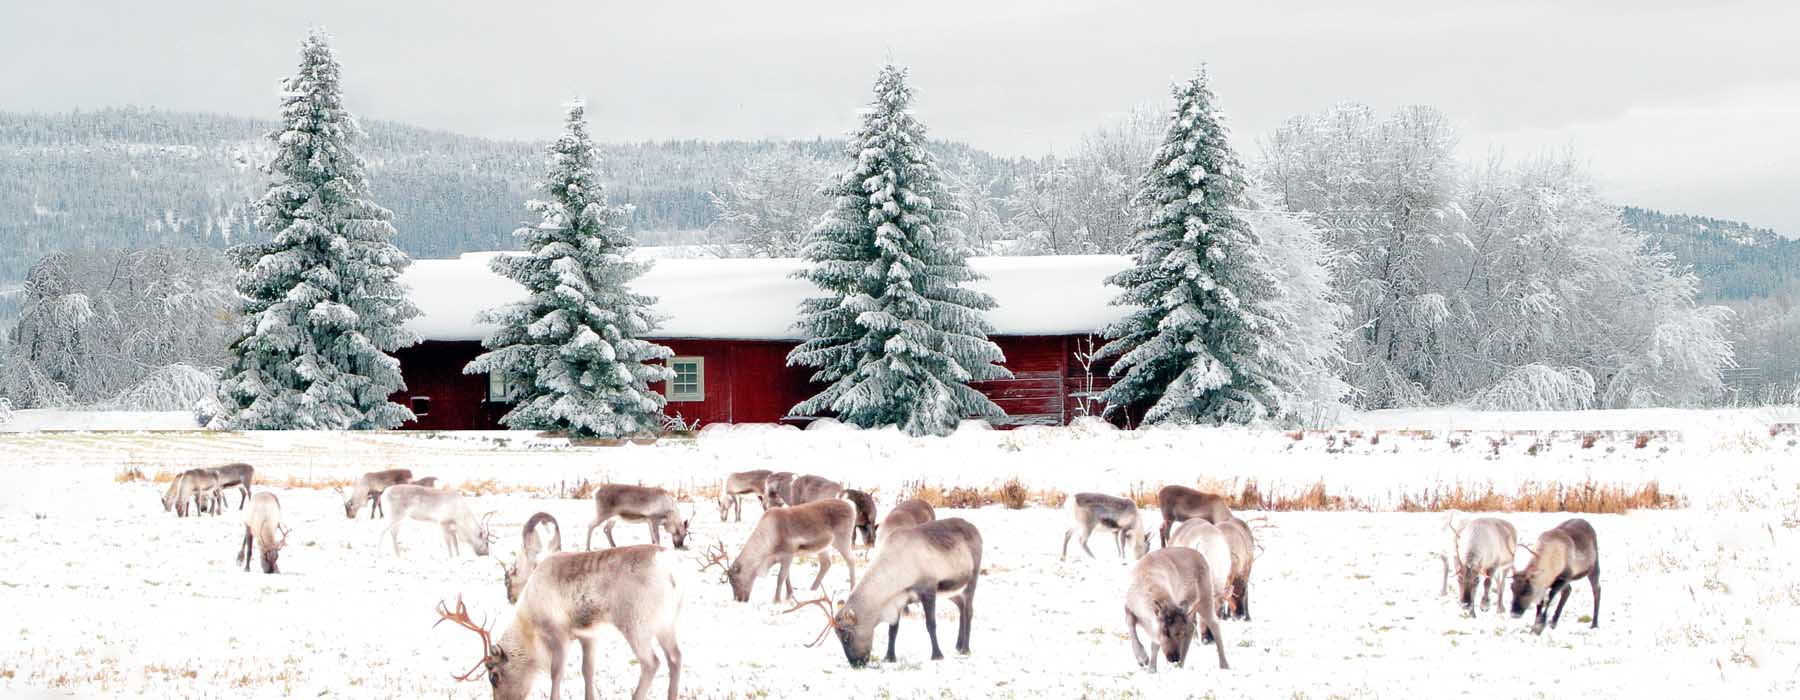 Finland<br class="hidden-md hidden-lg" /> Winter Holidays